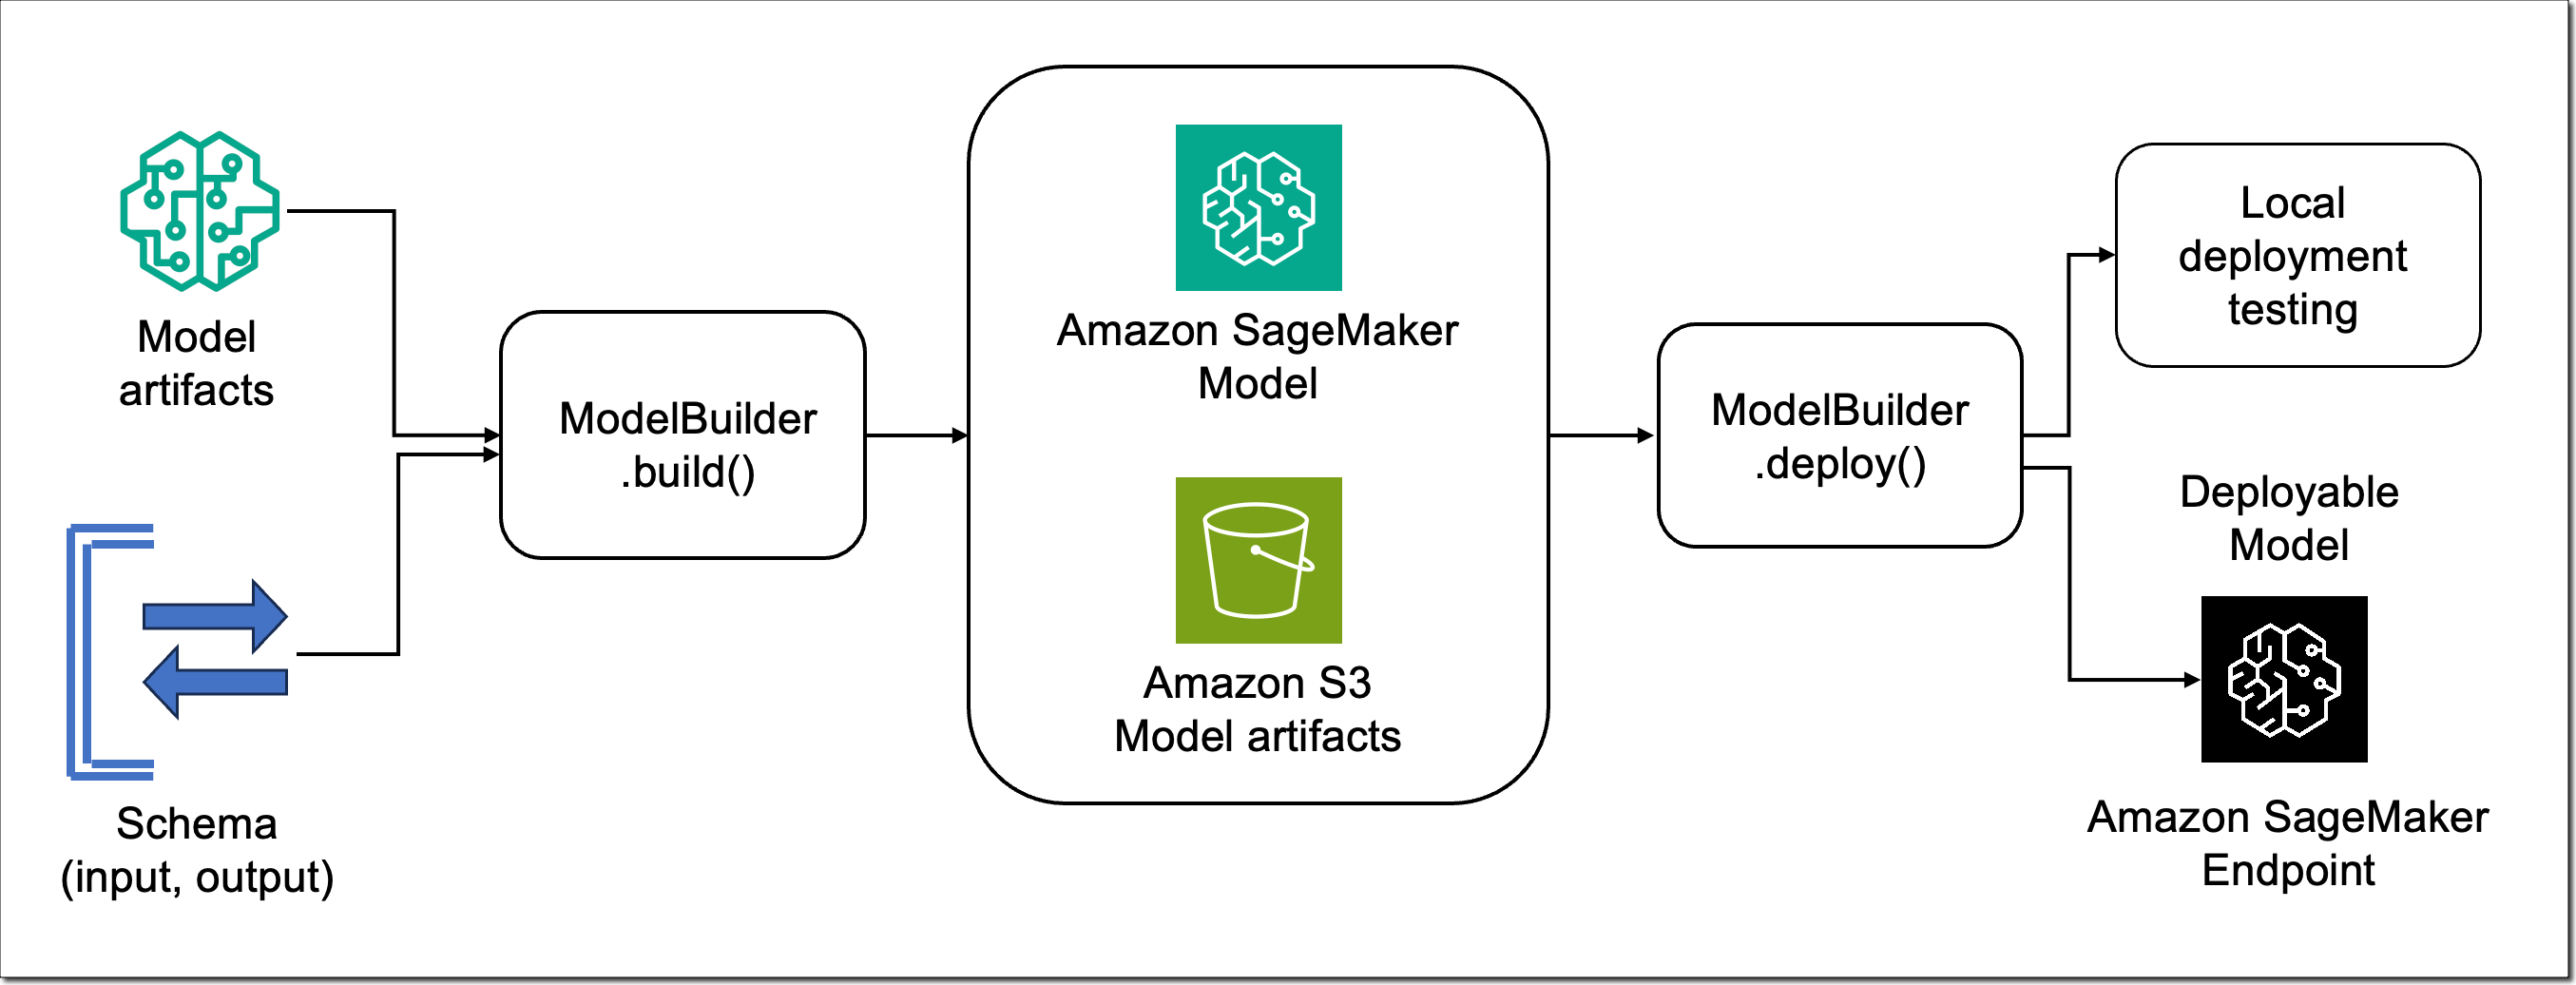 Amazon SageMaker ModelBuilder